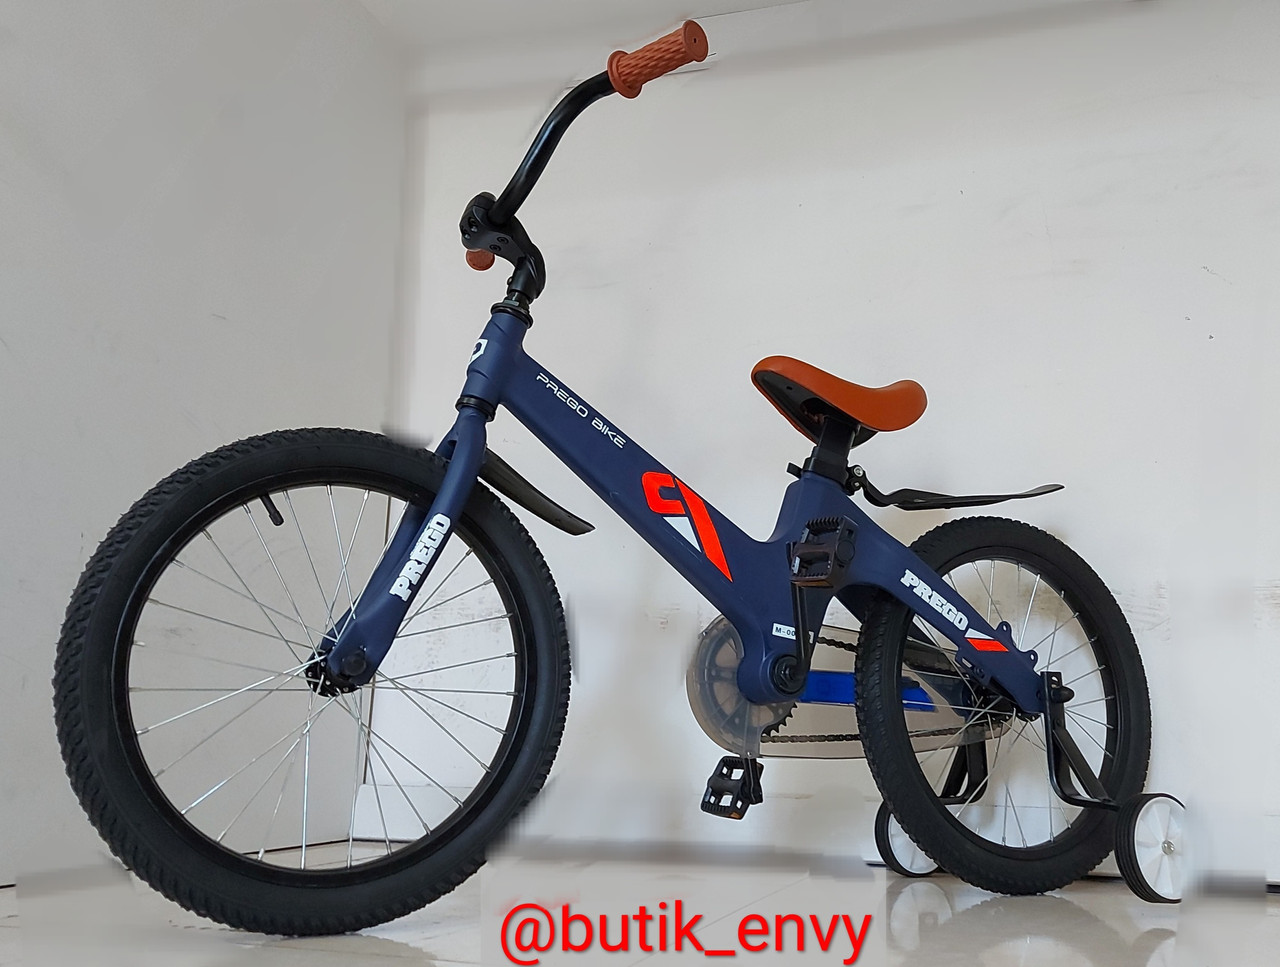 Очень легкий детский велосипед "Prego" 18" колеса. Алюминиевая рама. С боковыми колесами.